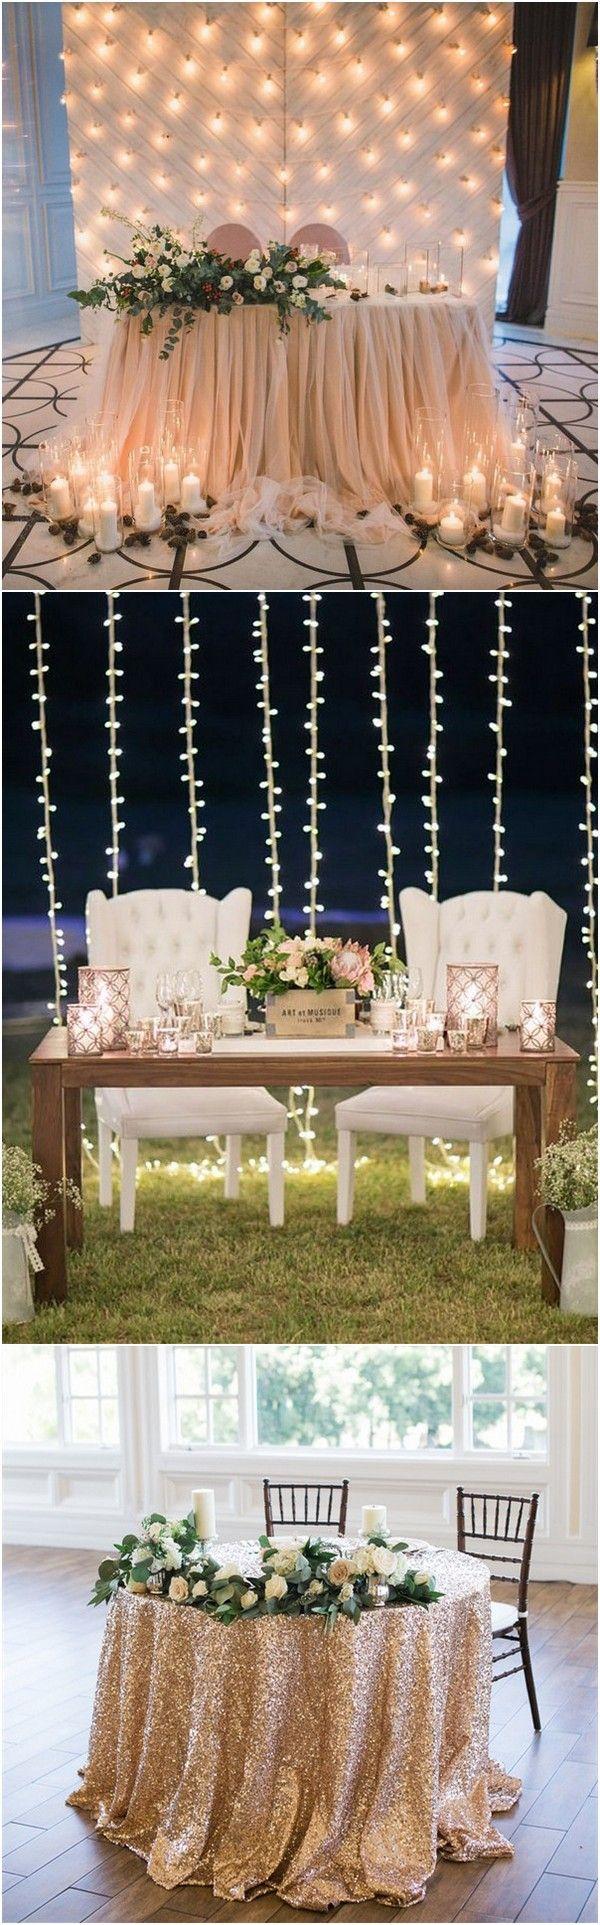 زفاف - 15 Romantic Wedding Sweetheart Table Decoration Ideas